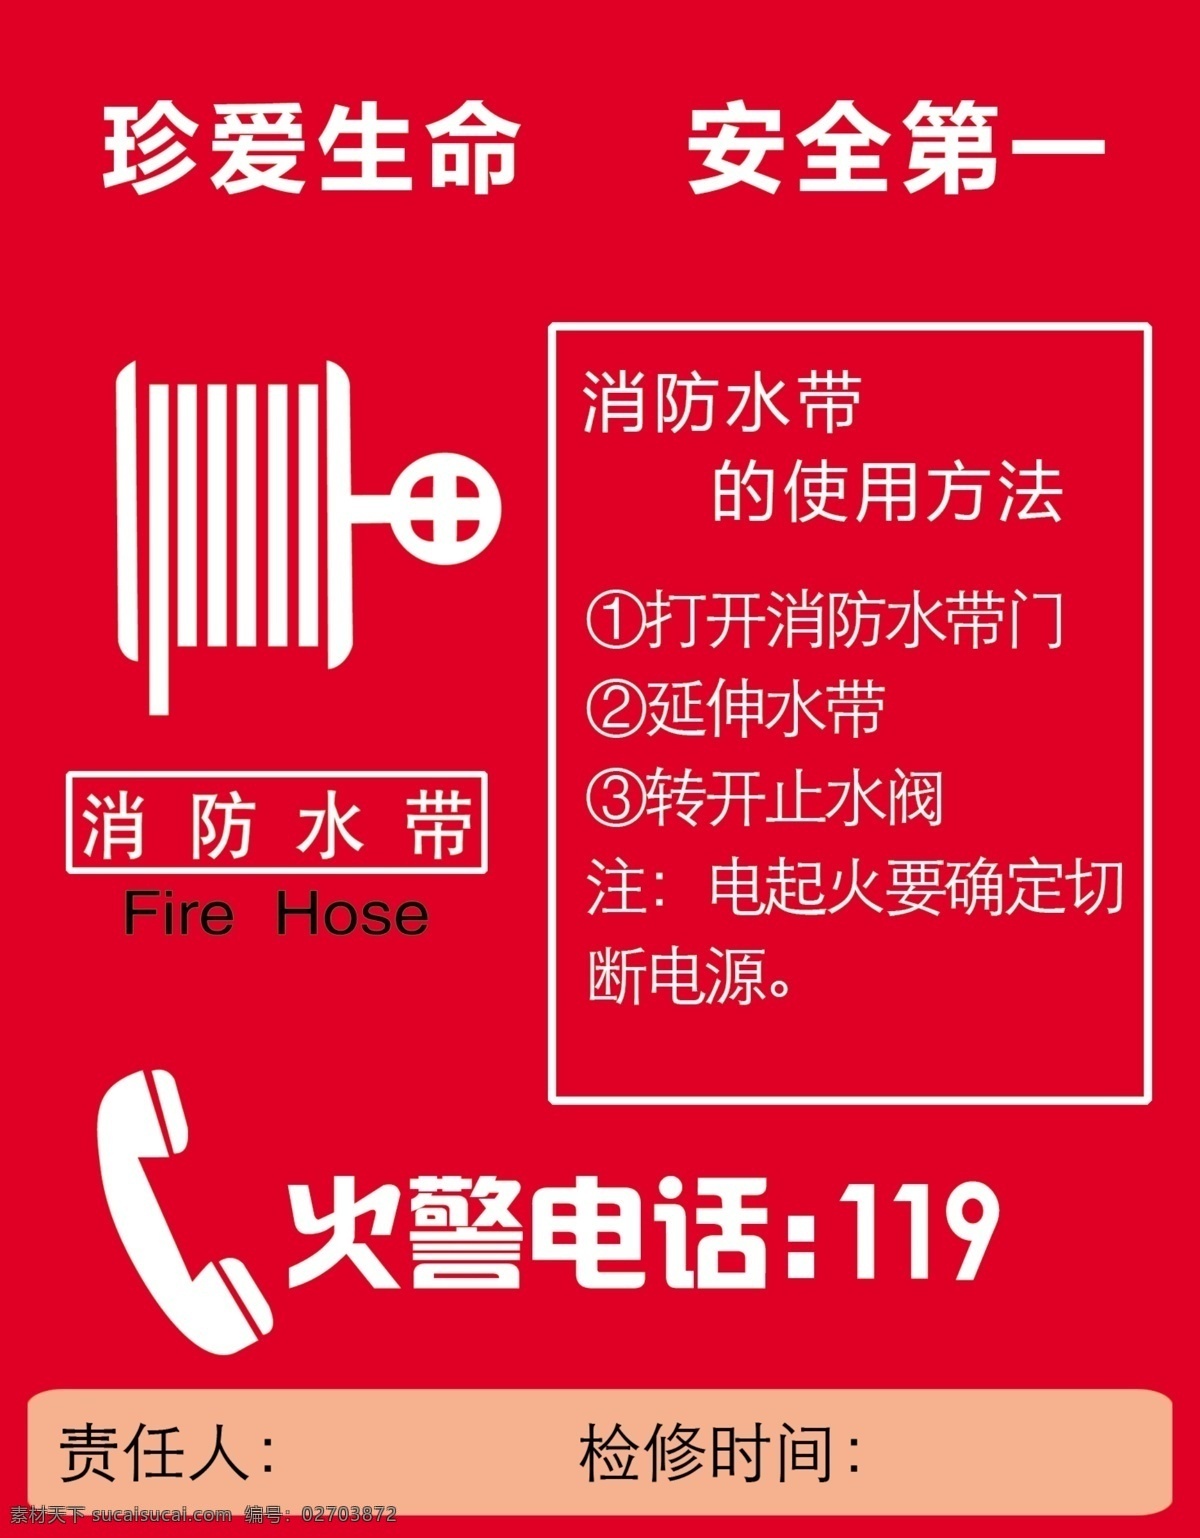 消防水带 操作步骤 灭火流程 灭火方式 步骤 灭火符号 展板模板 广告设计模板 源文件